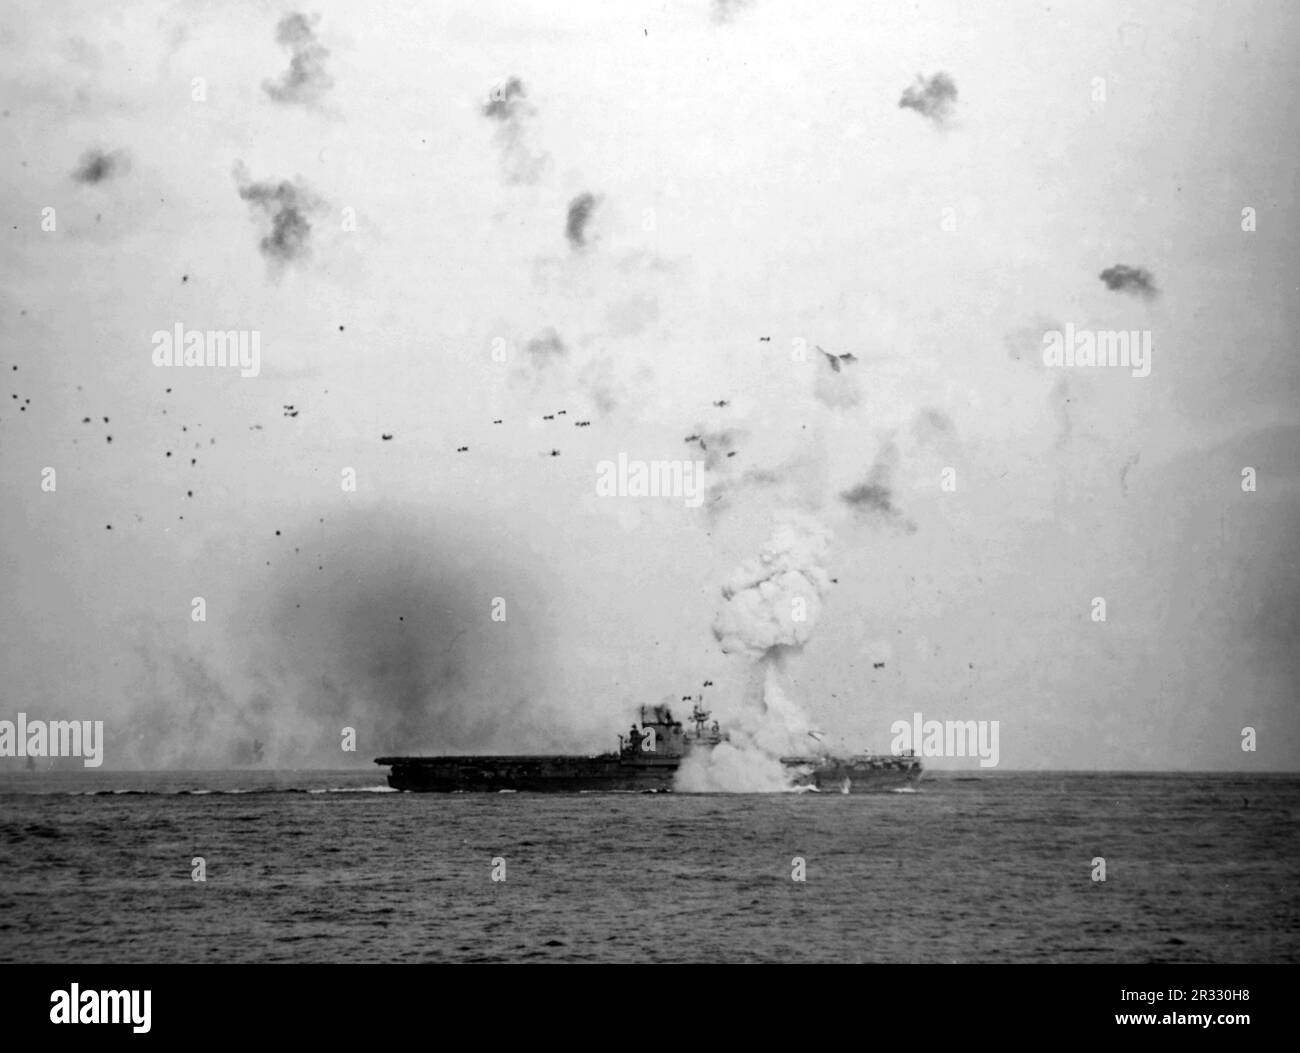 Die USA Der Flugzeugträger USS Enterprise (CV-6) der Marine wurde am 14. Mai 1945 von einem japanischen bombenbeladenen Kamikaze getroffen. Der Fahrstuhl des Schiffs wurde etwa 400 Meter hoch in die Luft gesprengt, durch die Kraft der Explosion, sechs Decks darunter. Als Japan Ende 1944 mit einer Niederlage konfrontiert war, entschied es sich, US-Schiffe mit Selbstmordattentaten, bekannt als Kamikaze, zu zerstören. Diese Angriffe waren eine starke physische und psychologische Waffe und versenkten insgesamt 47 Schiffe zu einem Preis von mehr als 3000 Piloten und Flugzeugen. Ende 1944 war die US-Marine so groß, dass die Verluste unbedeutend waren und sich nicht änderten Stockfoto